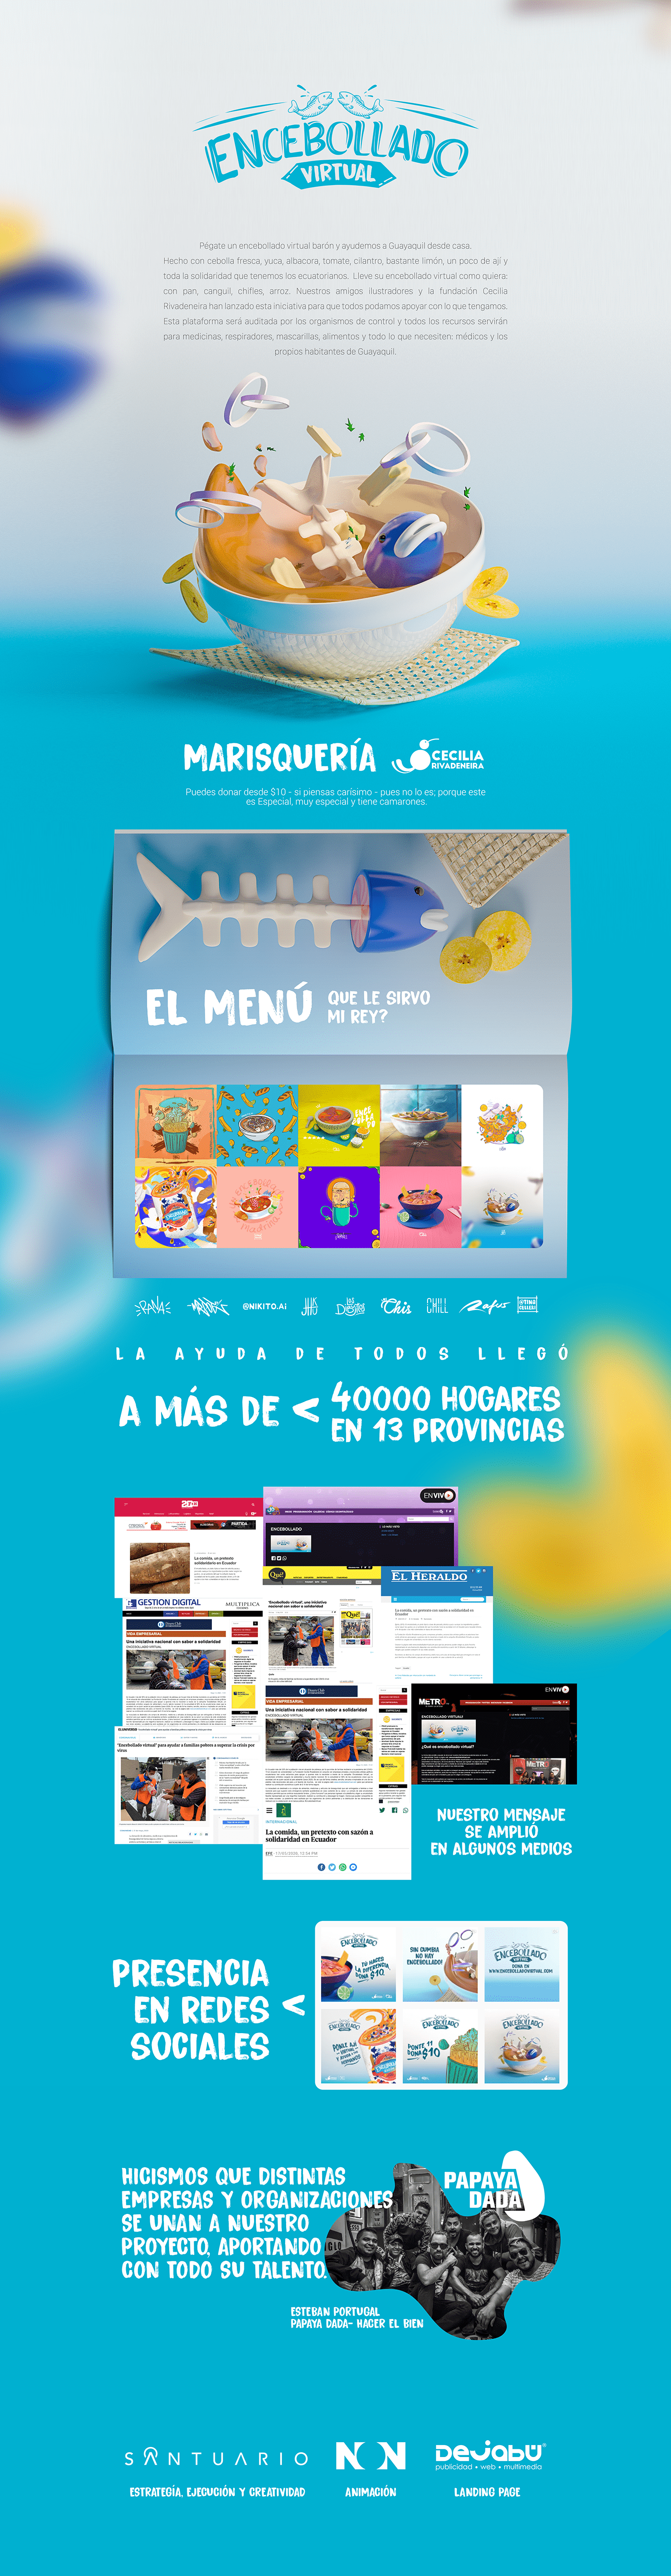 3dart Advertising  digital donation Ecuador encebollado Food  fundation help COVID19